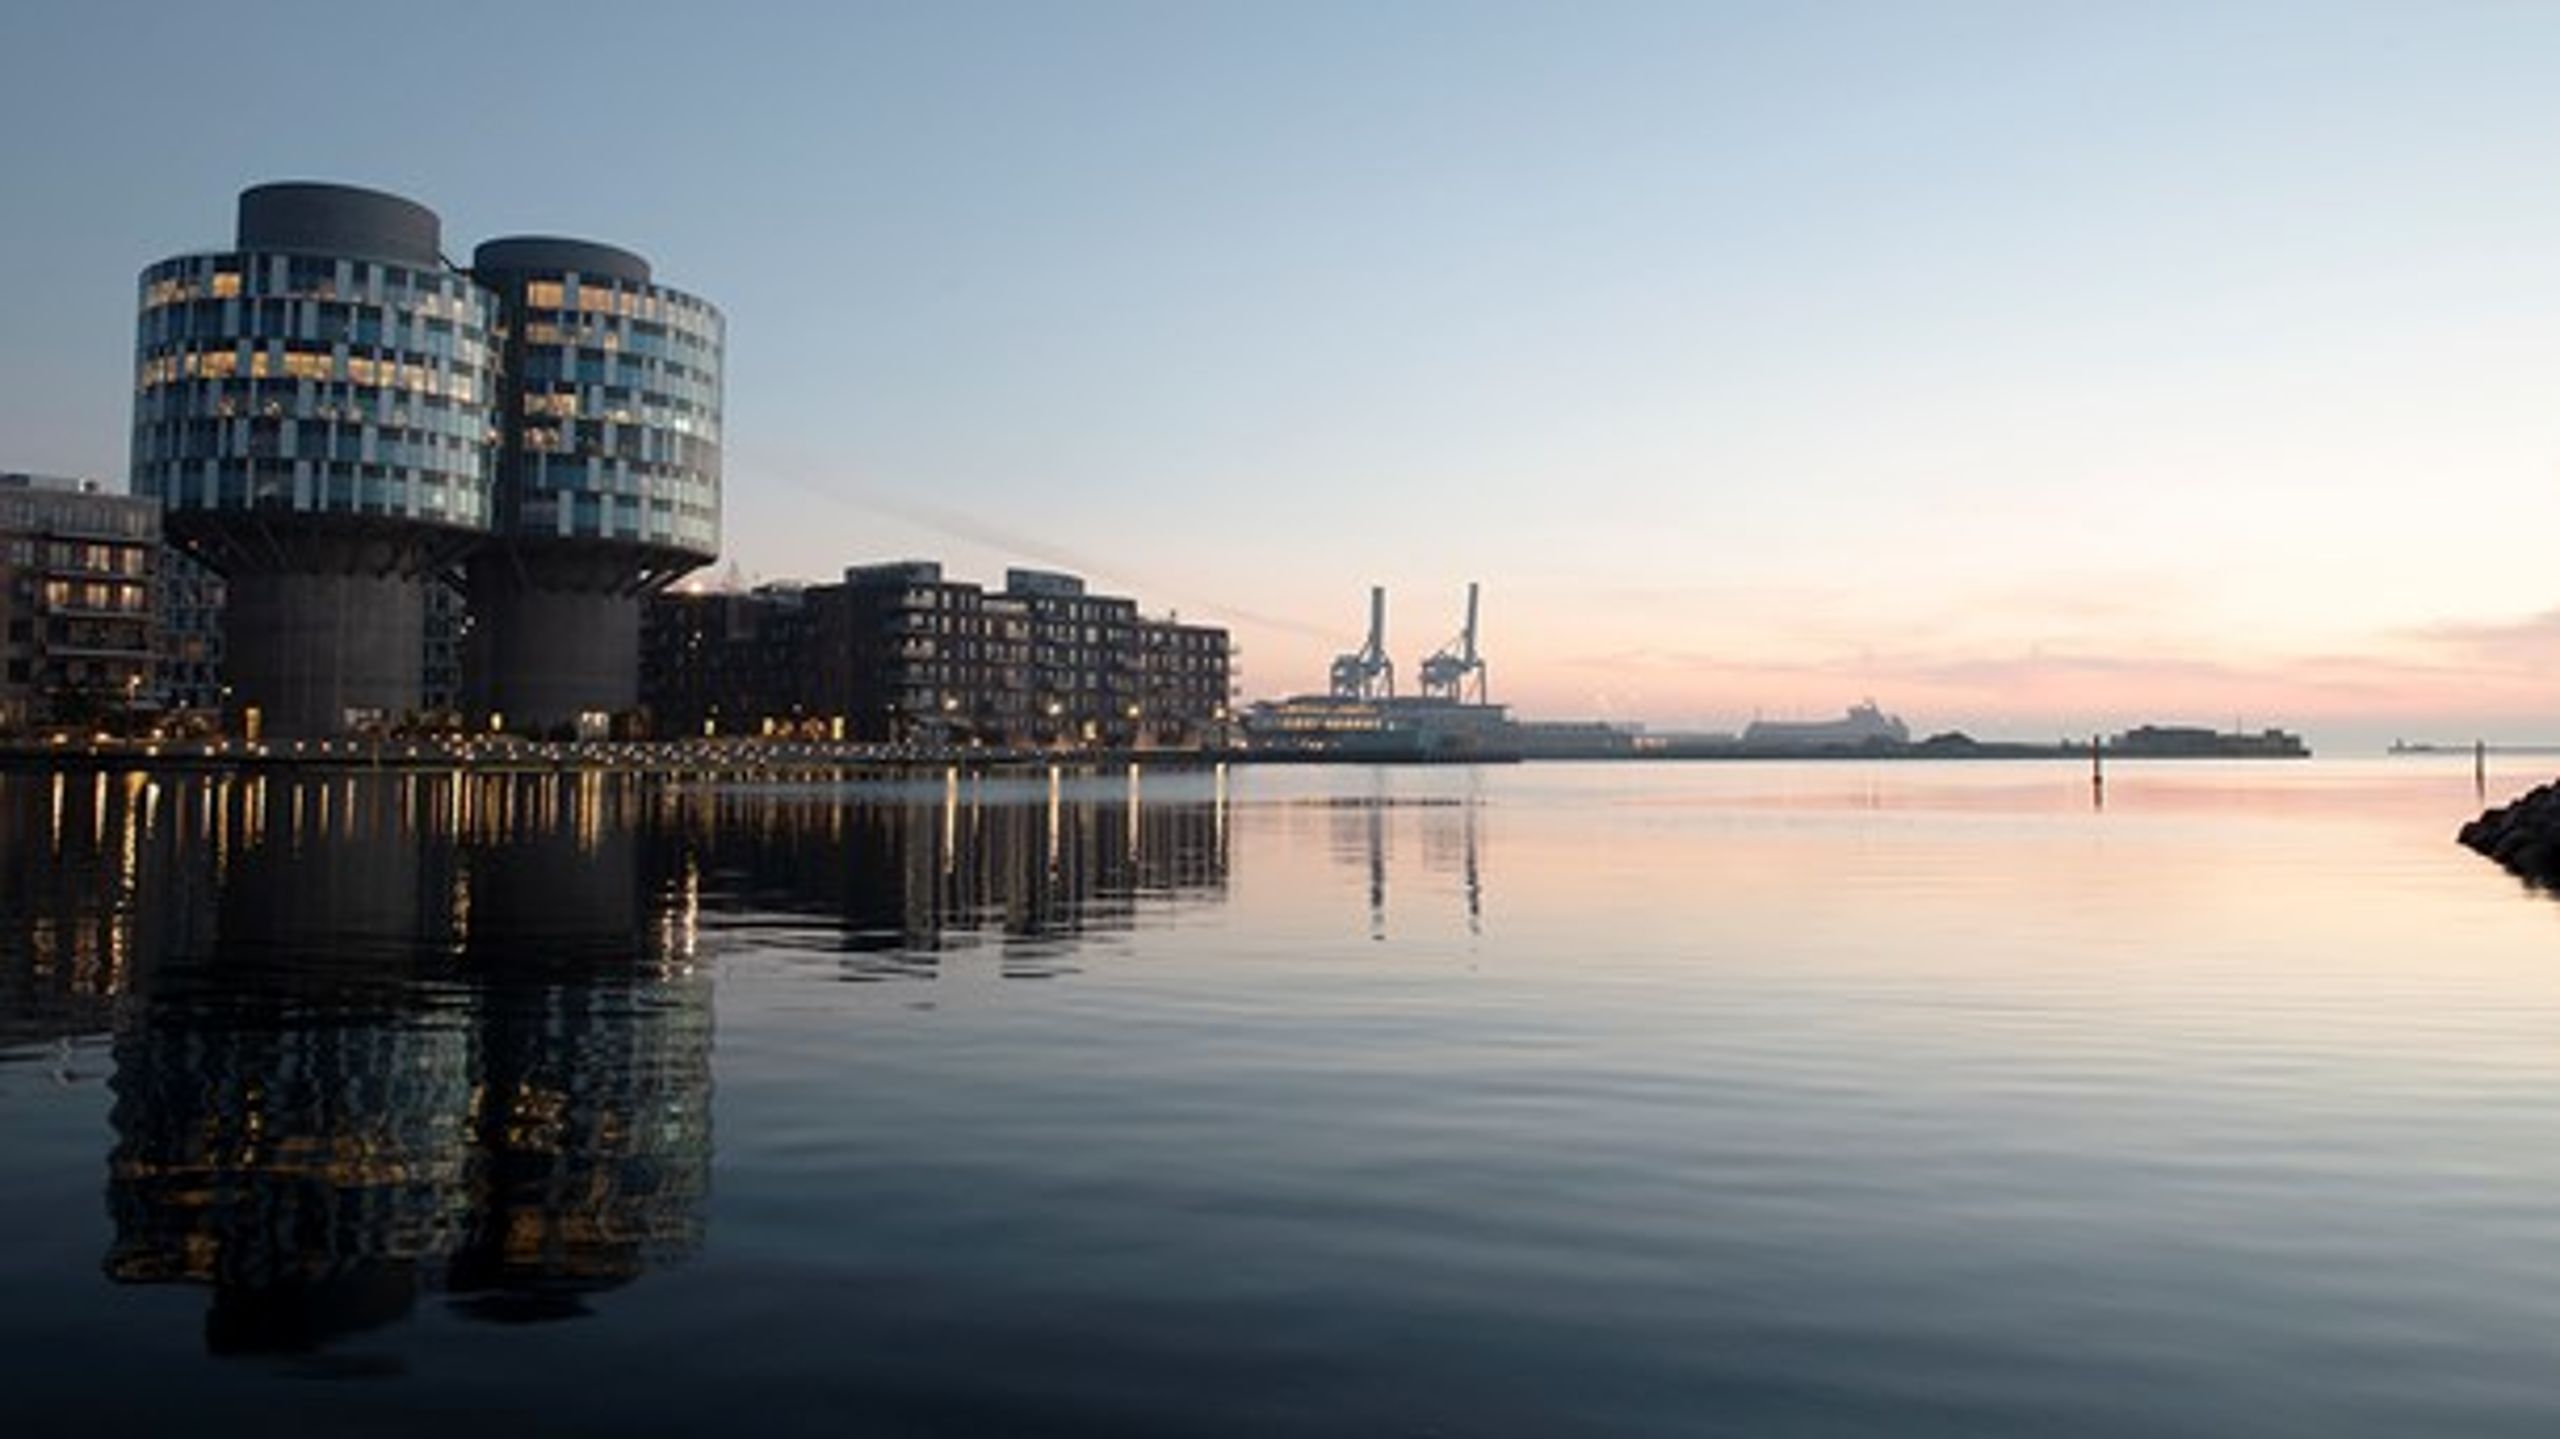 Udviklingen af Lynetteholmen kan med fordel lade sig inspirere af Århusgadekvarteret i Nordhavn, hvor ambitionen er en CO2-neutral bydel.